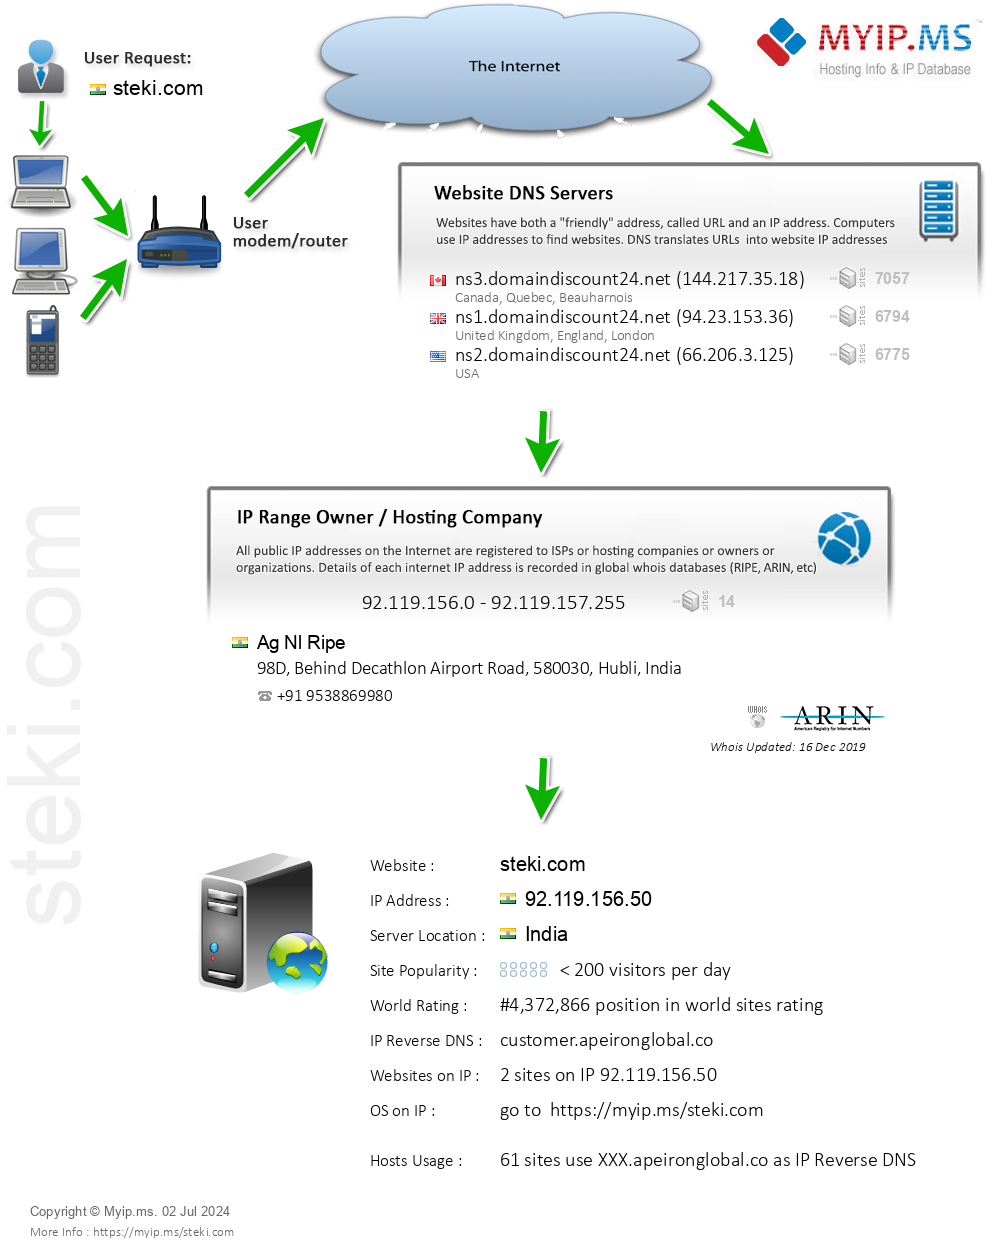 Steki.com - Website Hosting Visual IP Diagram